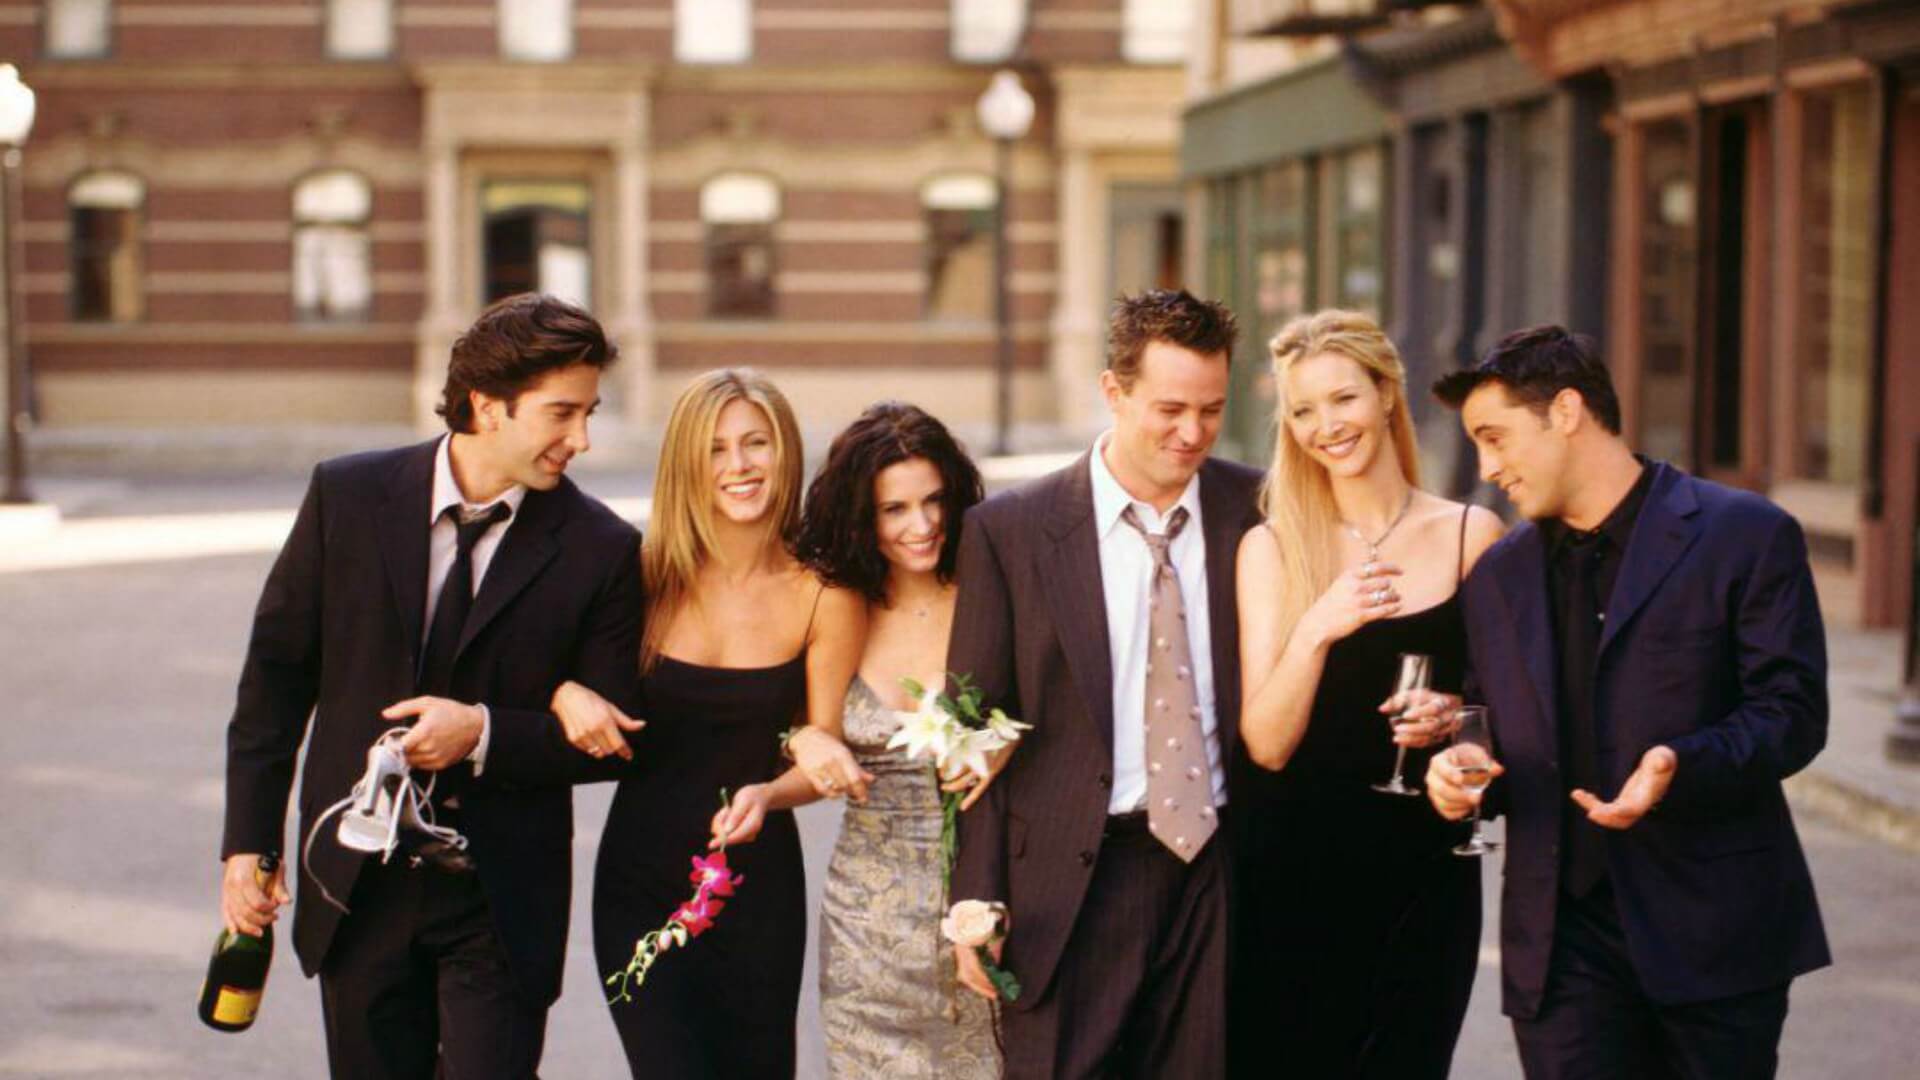 Reunión de "Friends" será estrenada el 27 de mayo a través de HBO Max